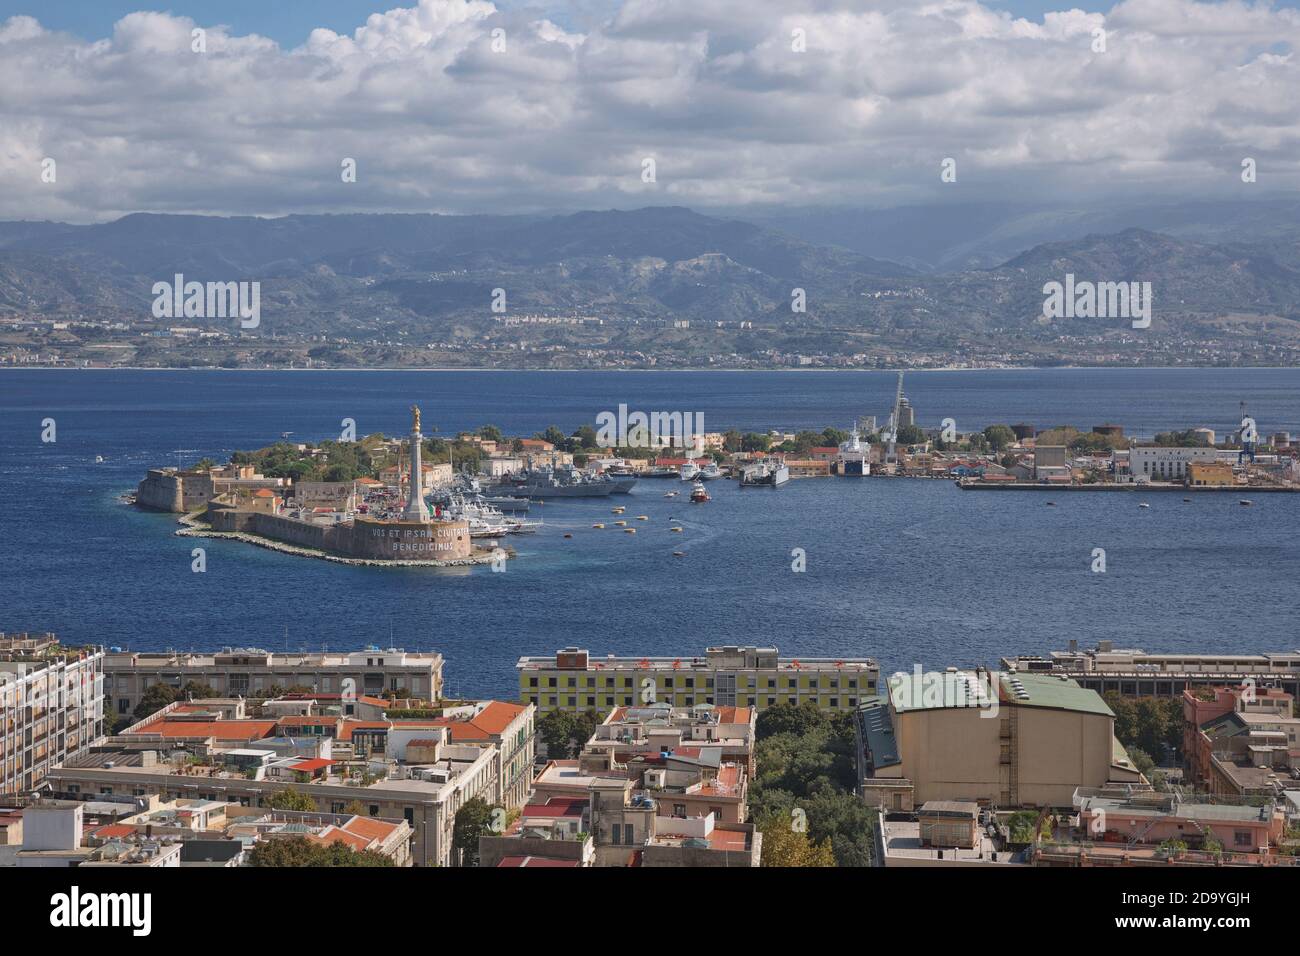 Messina, Sizilien, Italien - 7. Oktober 2017: Blick auf den Hafen von Messina mit der goldenen Statue der Madonna della Lettera in Sizilien, Italien. Stockfoto